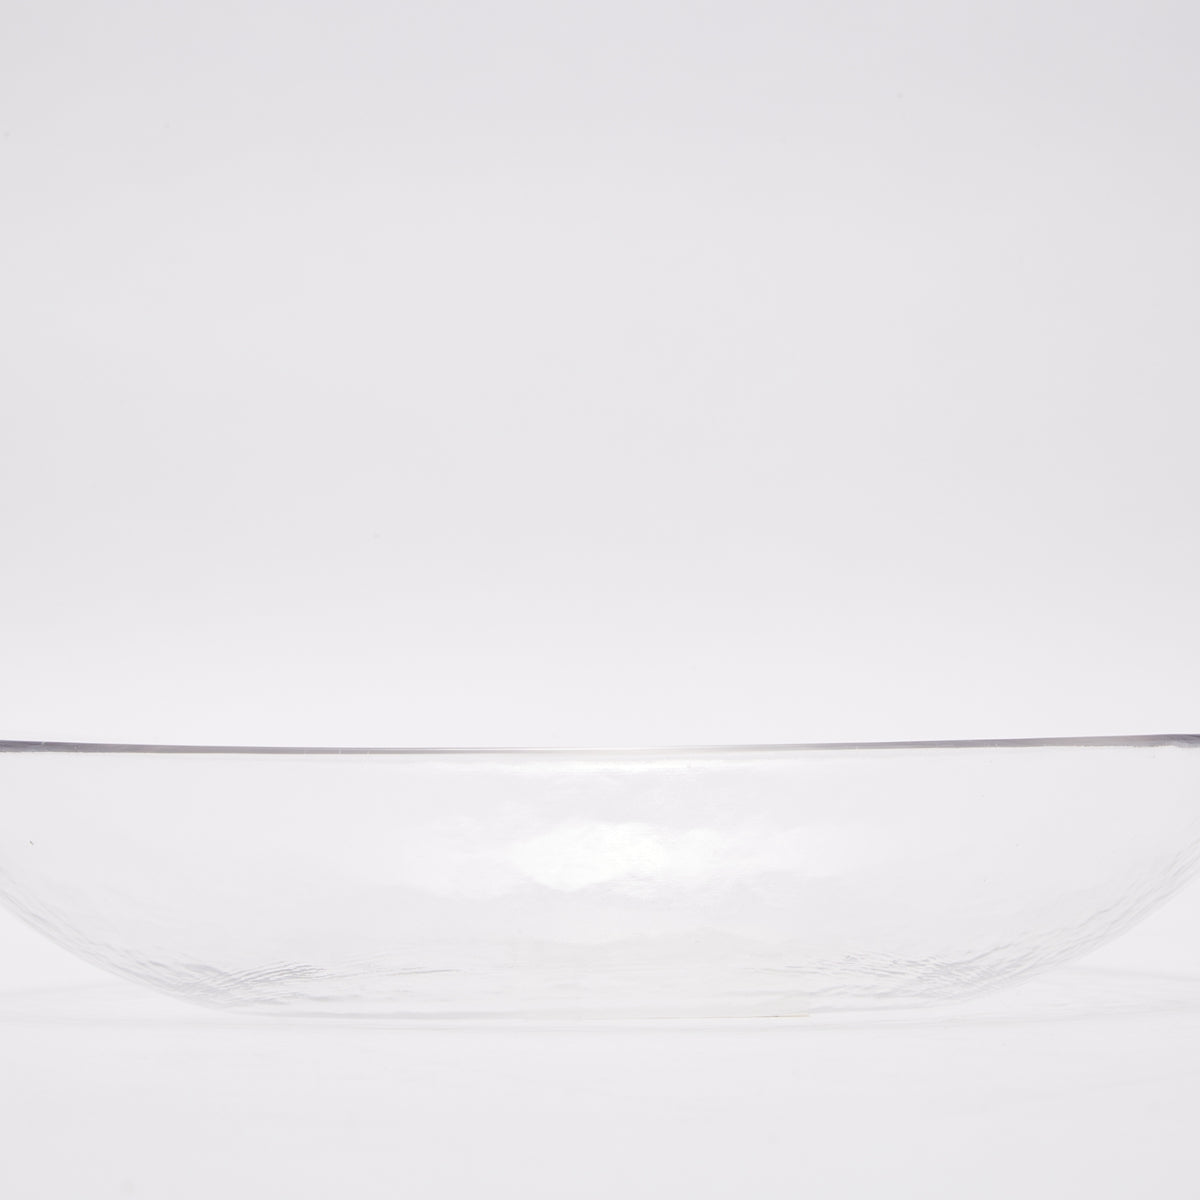 【家居】冷紋玻璃餐具